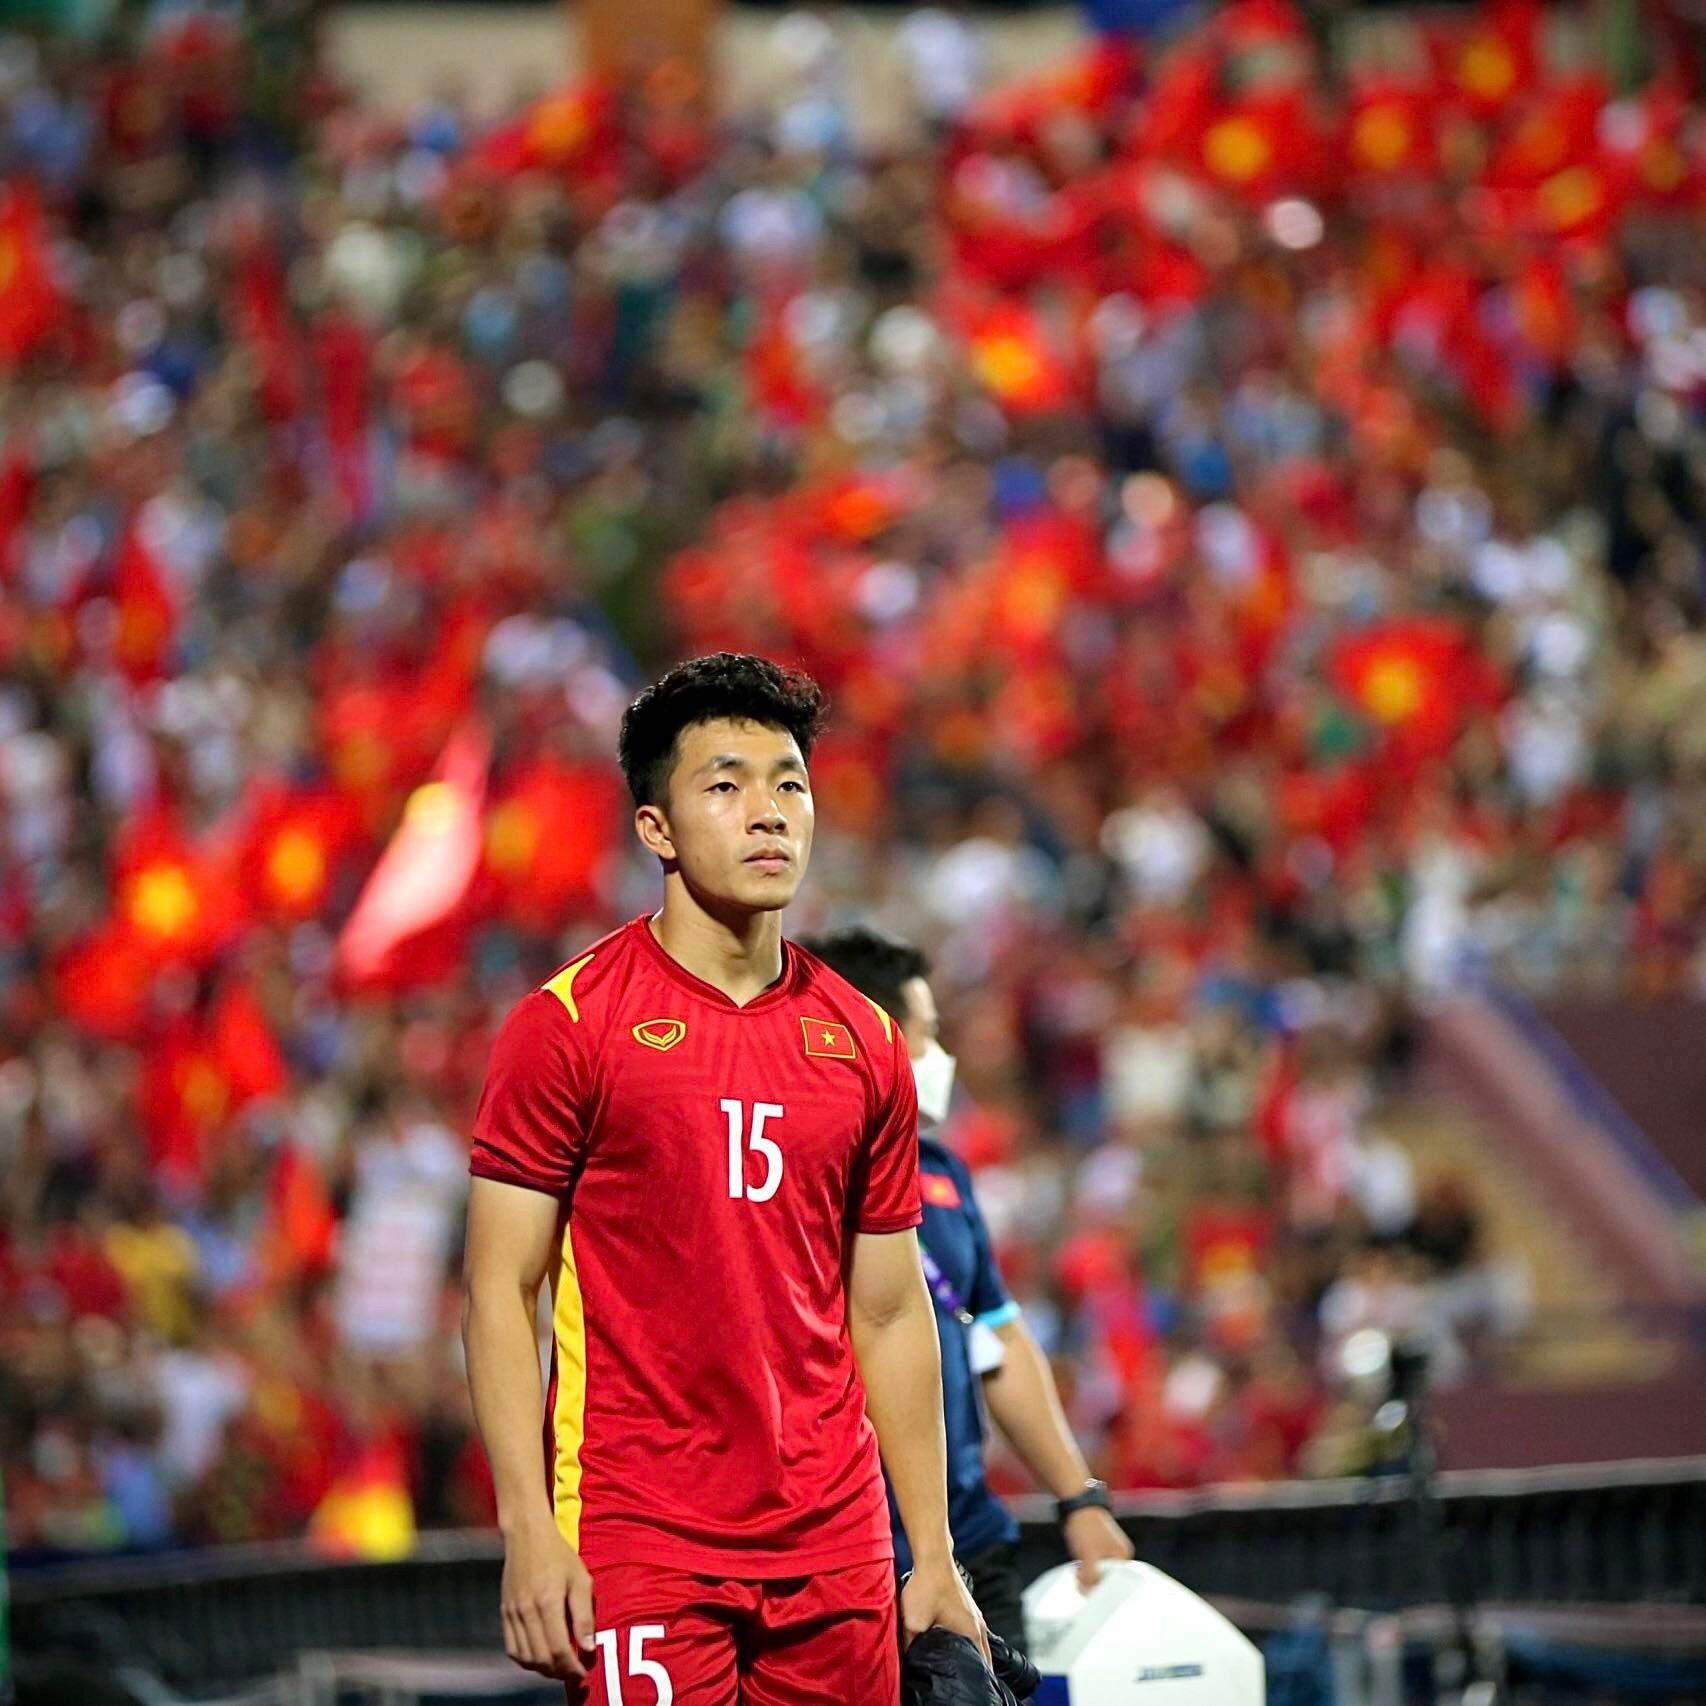 Tiền vệ được các chuyên gia đánh giá là tốt nhất trong nhóm các cầu thủ đá trung tâm của U22 Việt Nam hiện tại. (Ảnh: Internet)